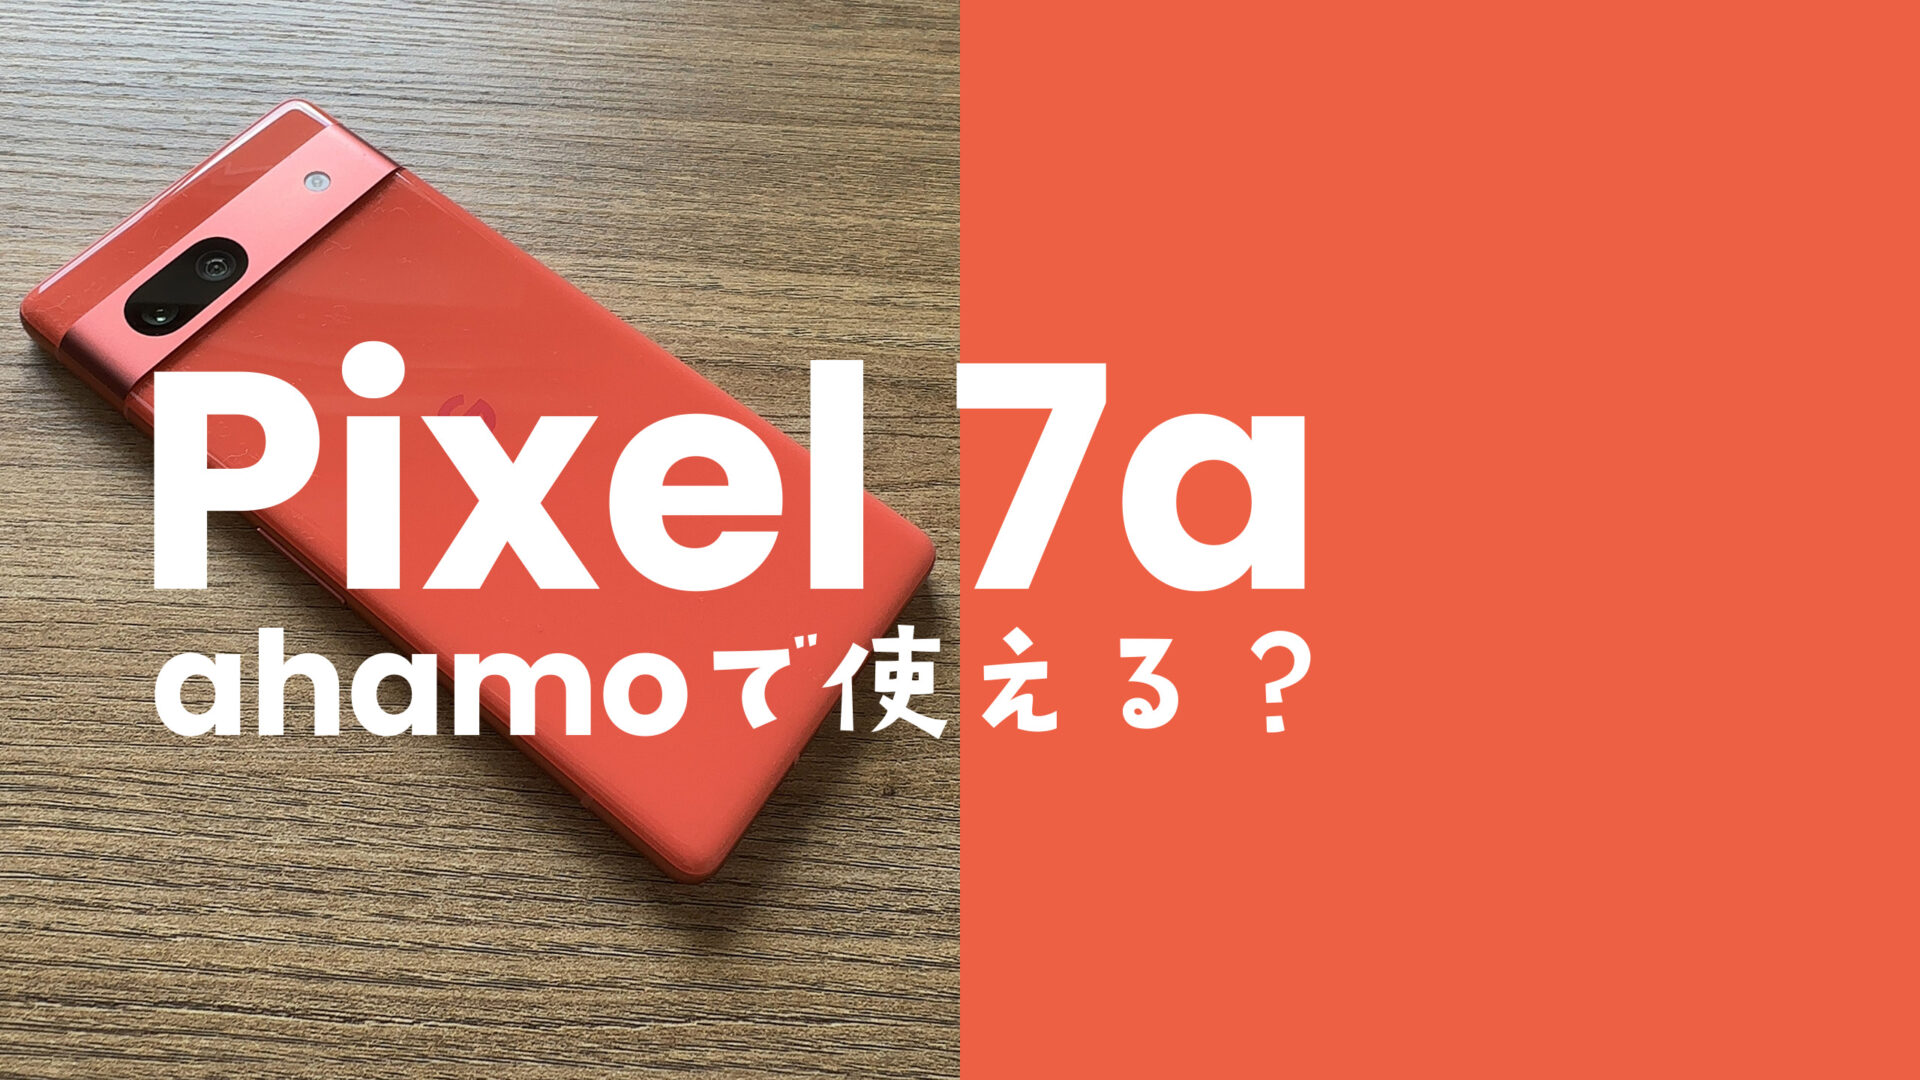 ahamo(アハモ)でGoogle Pixel 7aは使える？ピクセル7aは対応機種？のサムネイル画像